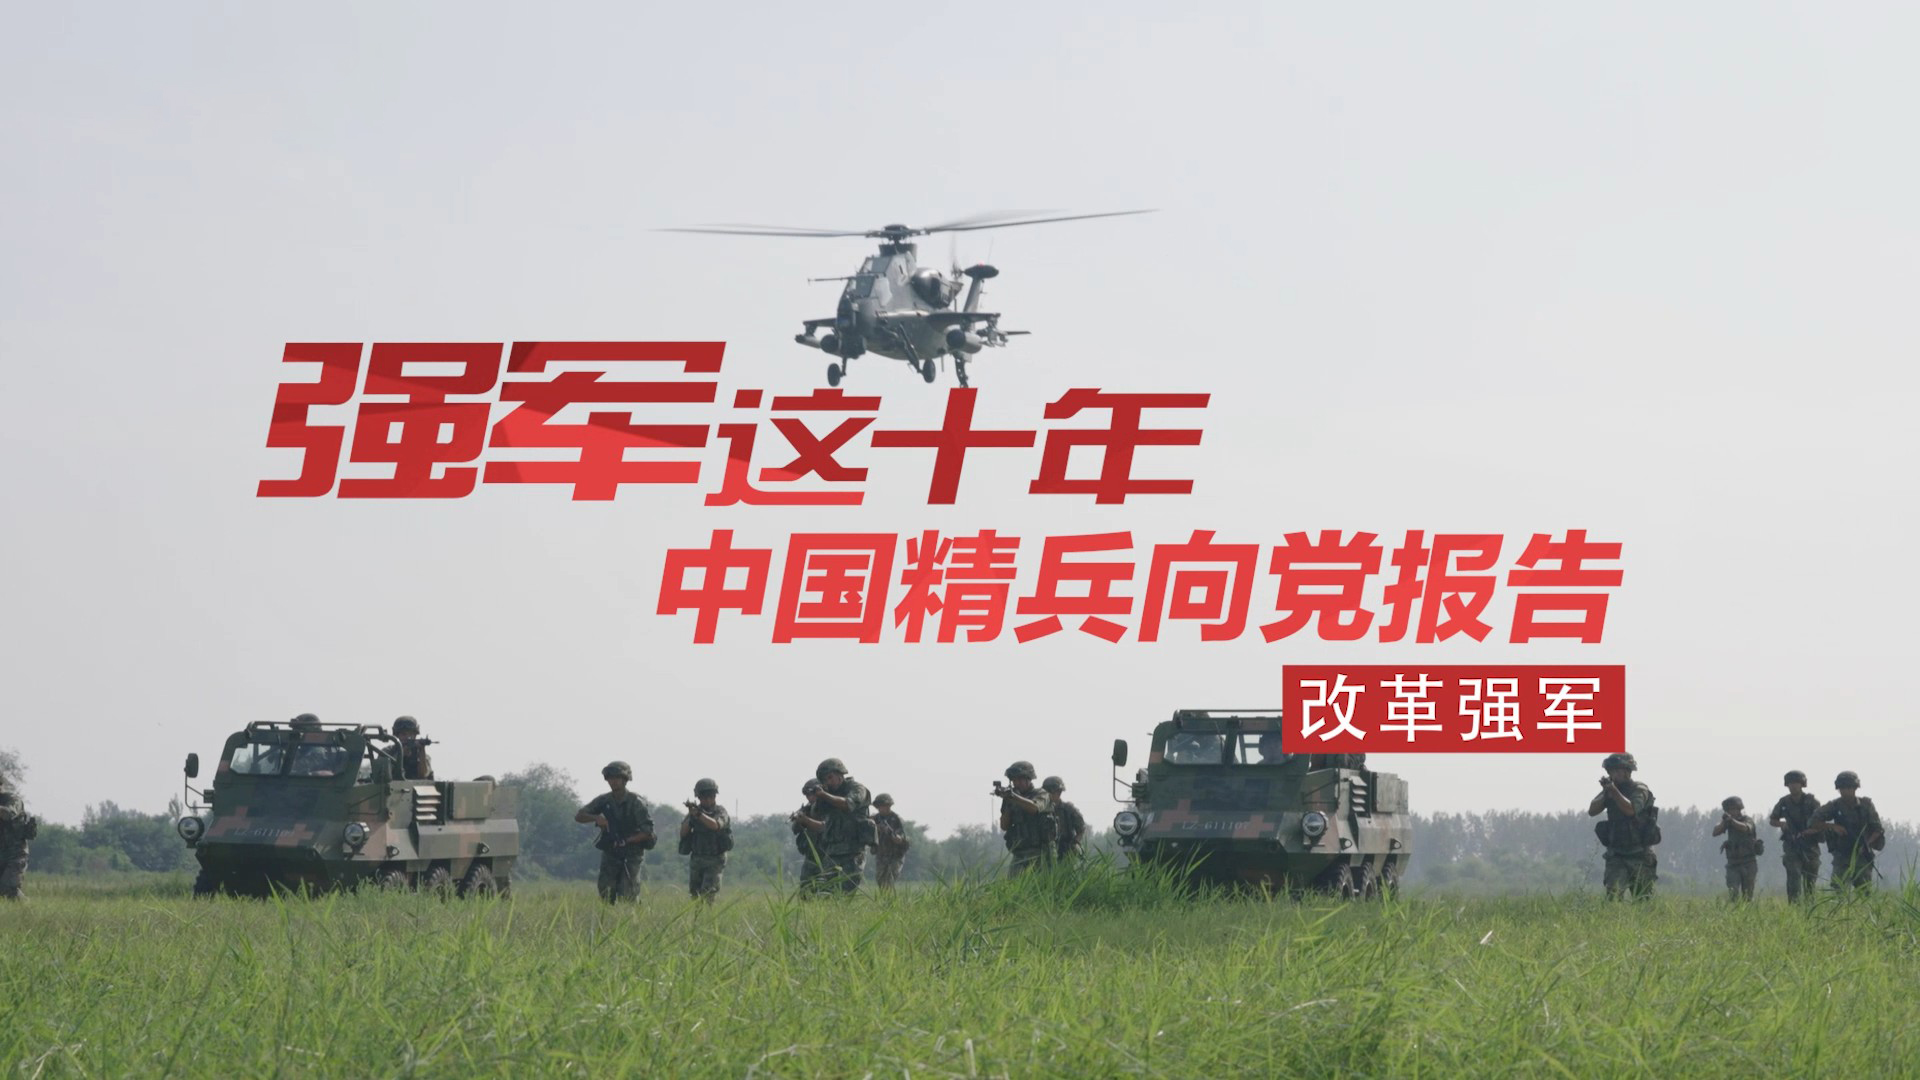 中国精兵向党报告丨飞行员“跨界”步兵连